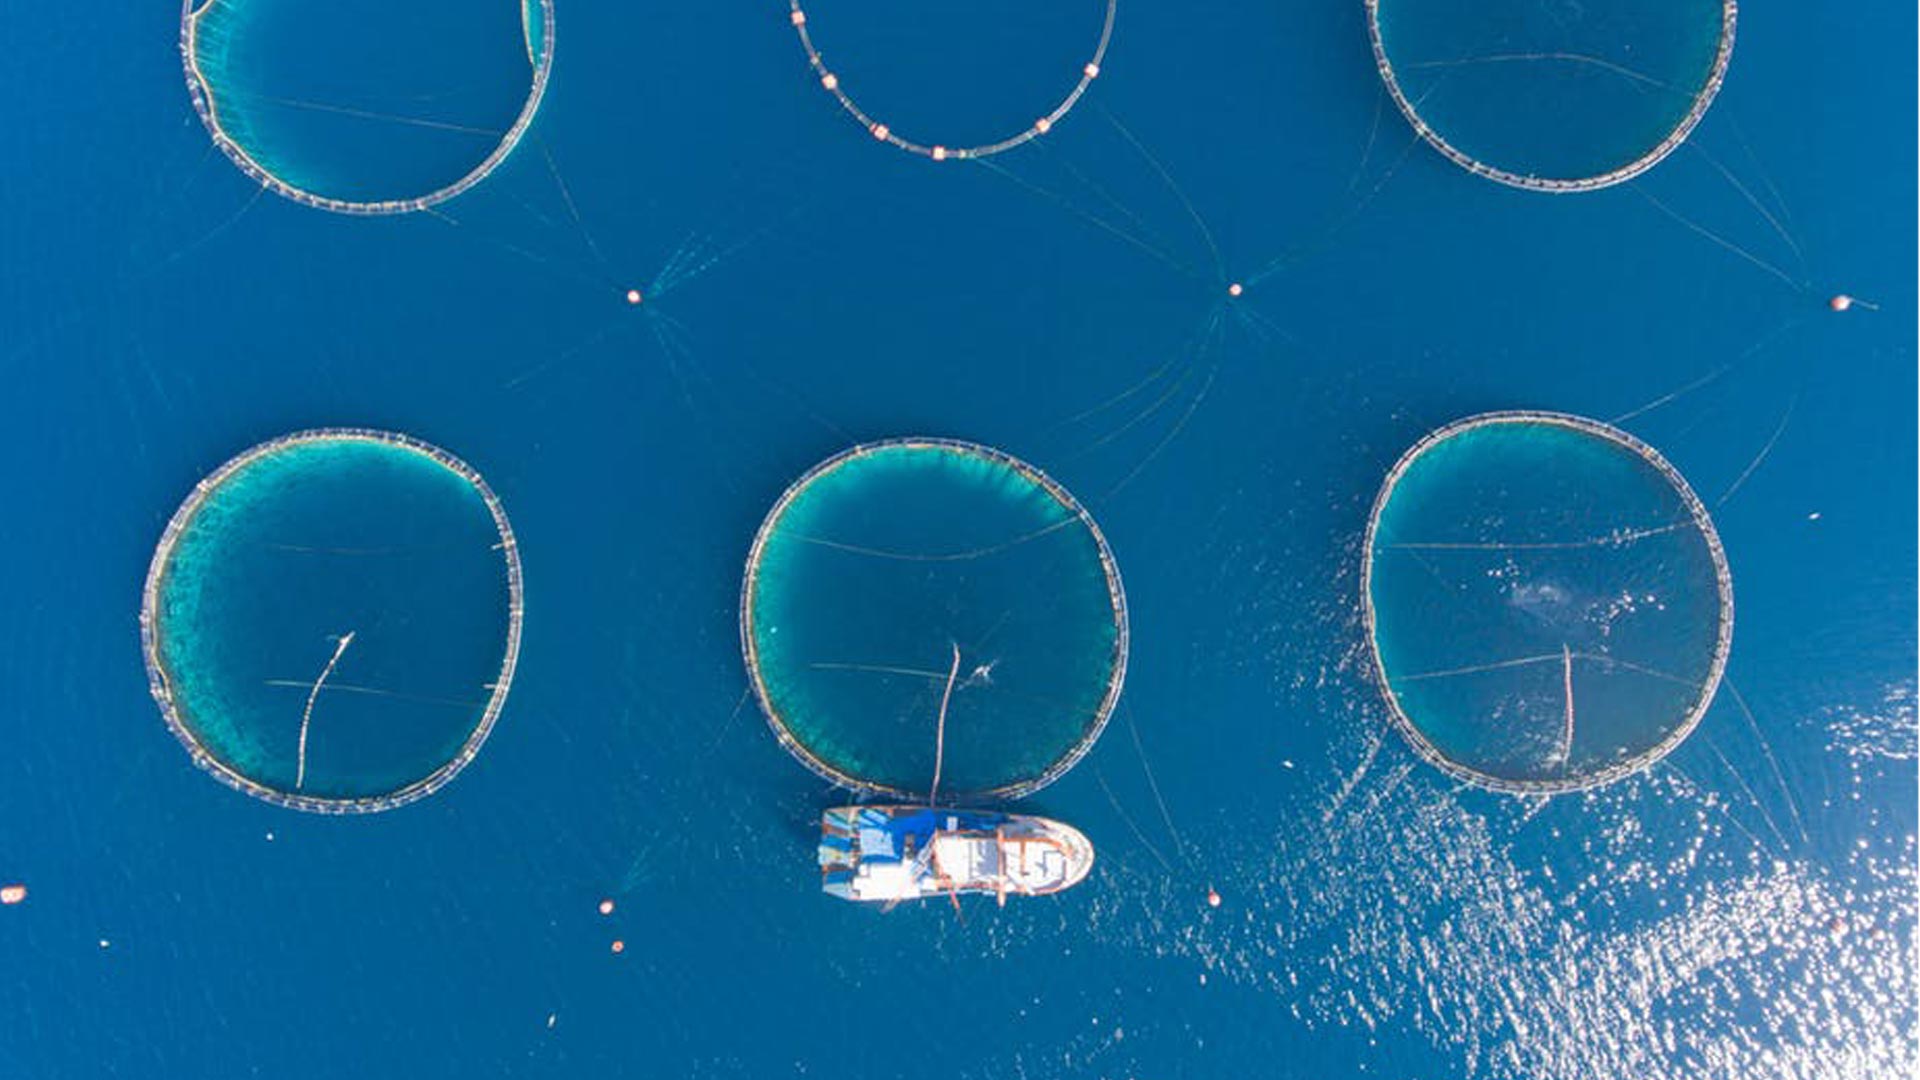 Suport tècnic al projecte BLUEFASMA d’economia circular en el sector de la pesca i l’aqüicultura